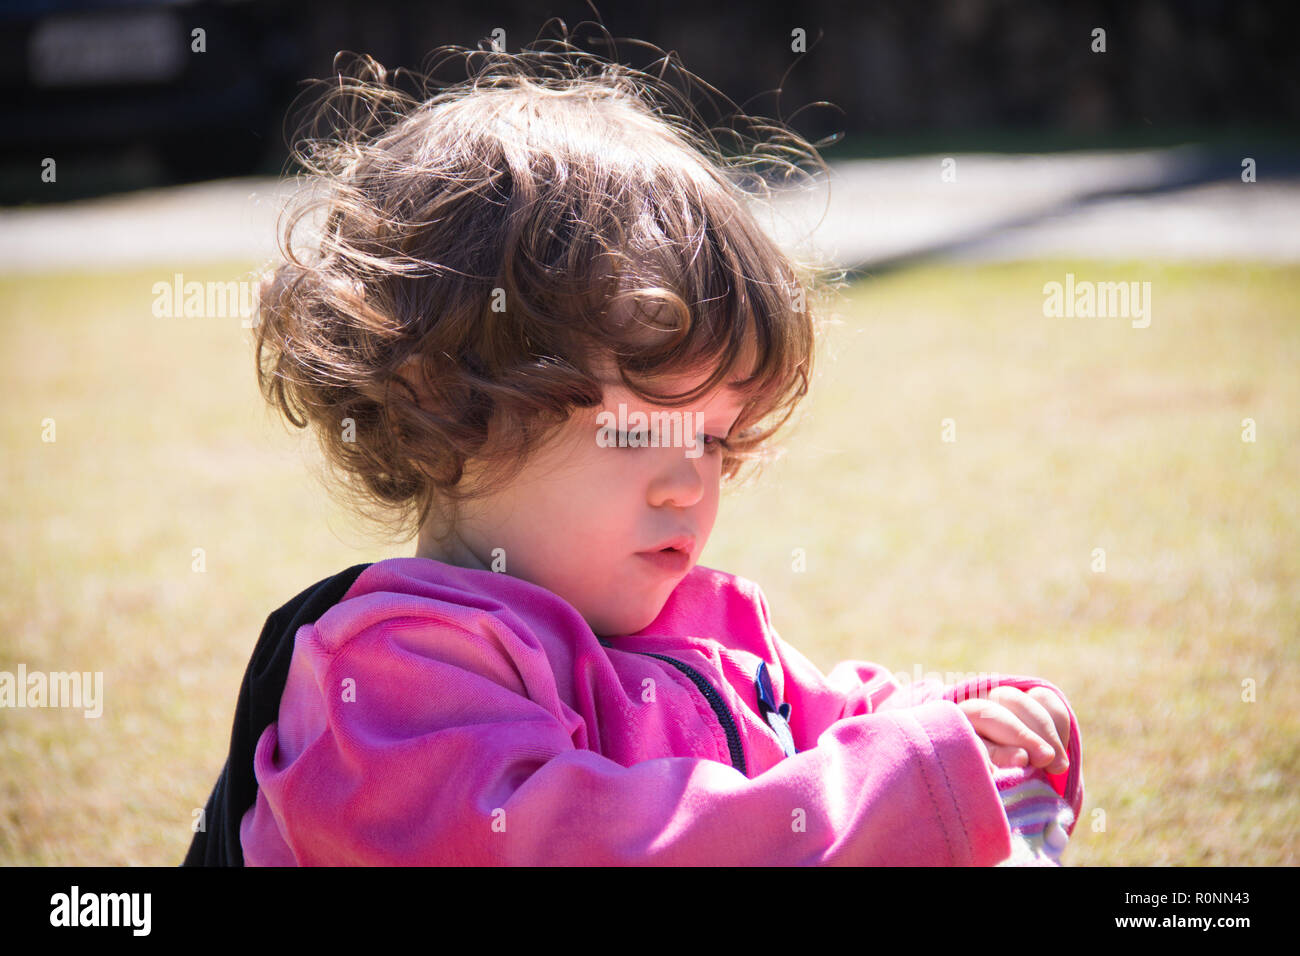 Ritratto di una ragazza in un parco a giocare con i suoi calzini Foto Stock